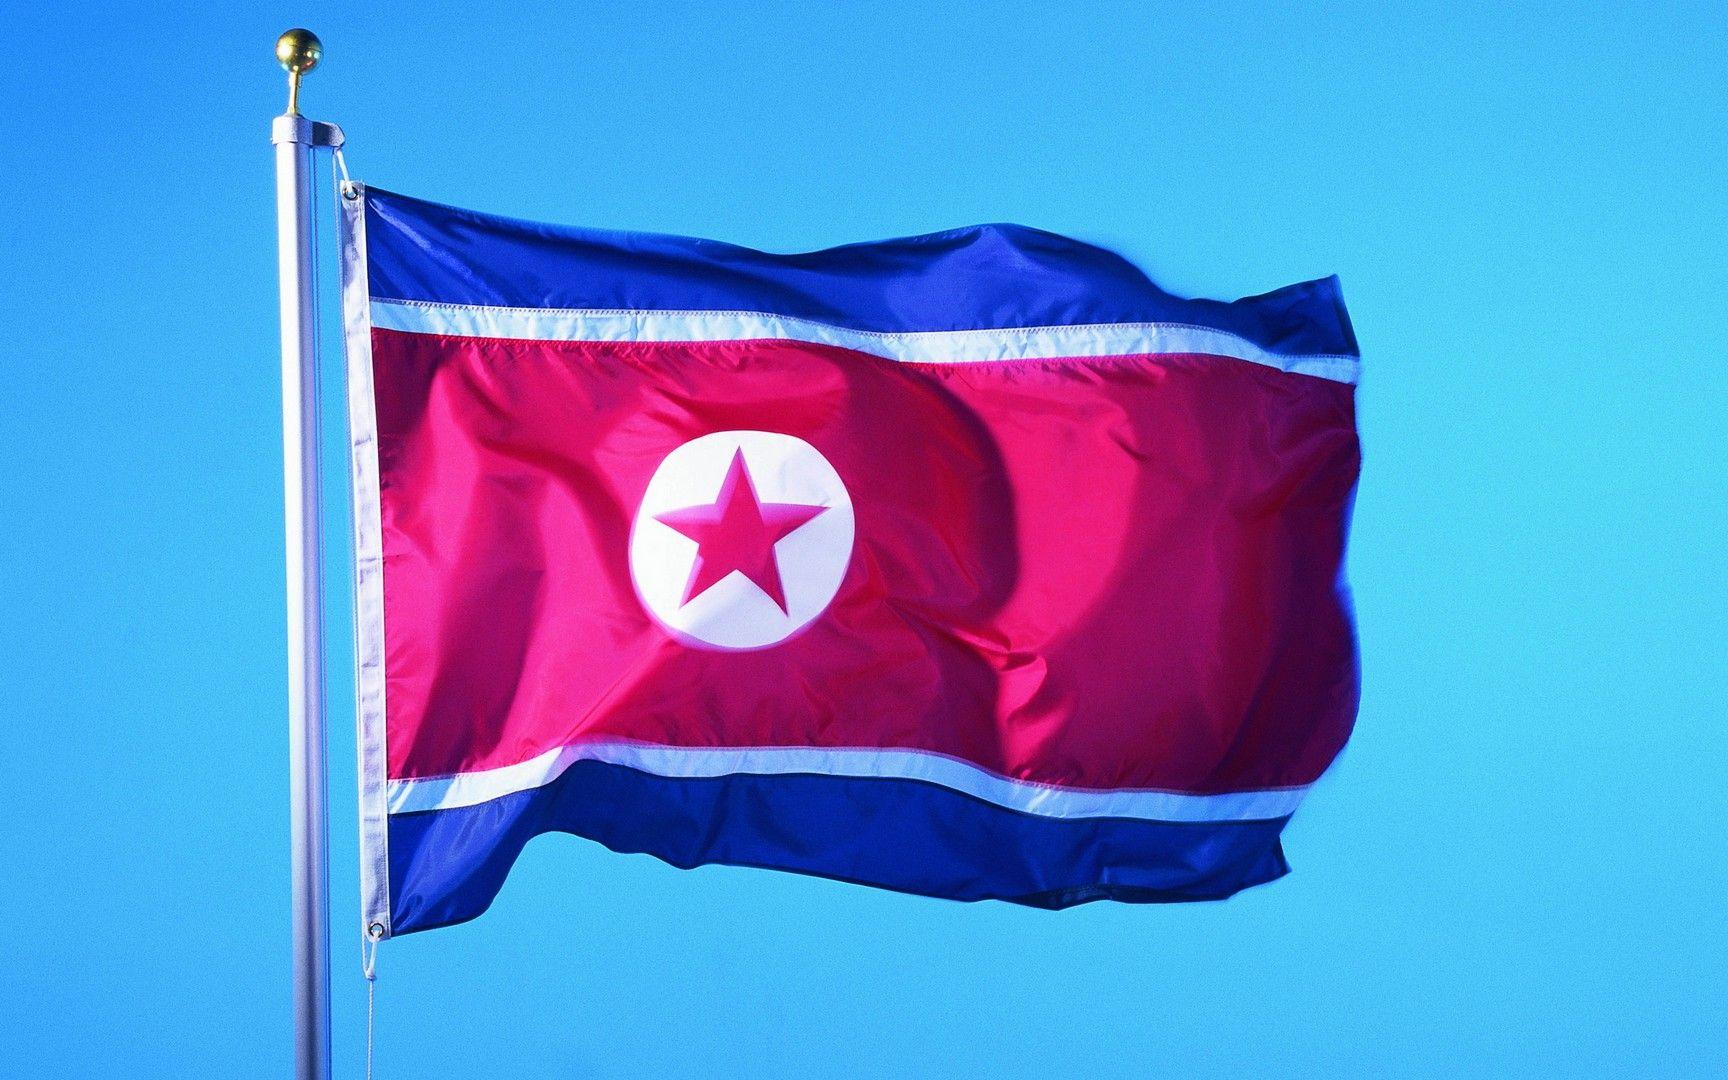 Flag of North Korea wallpaper. Flags wallpaper